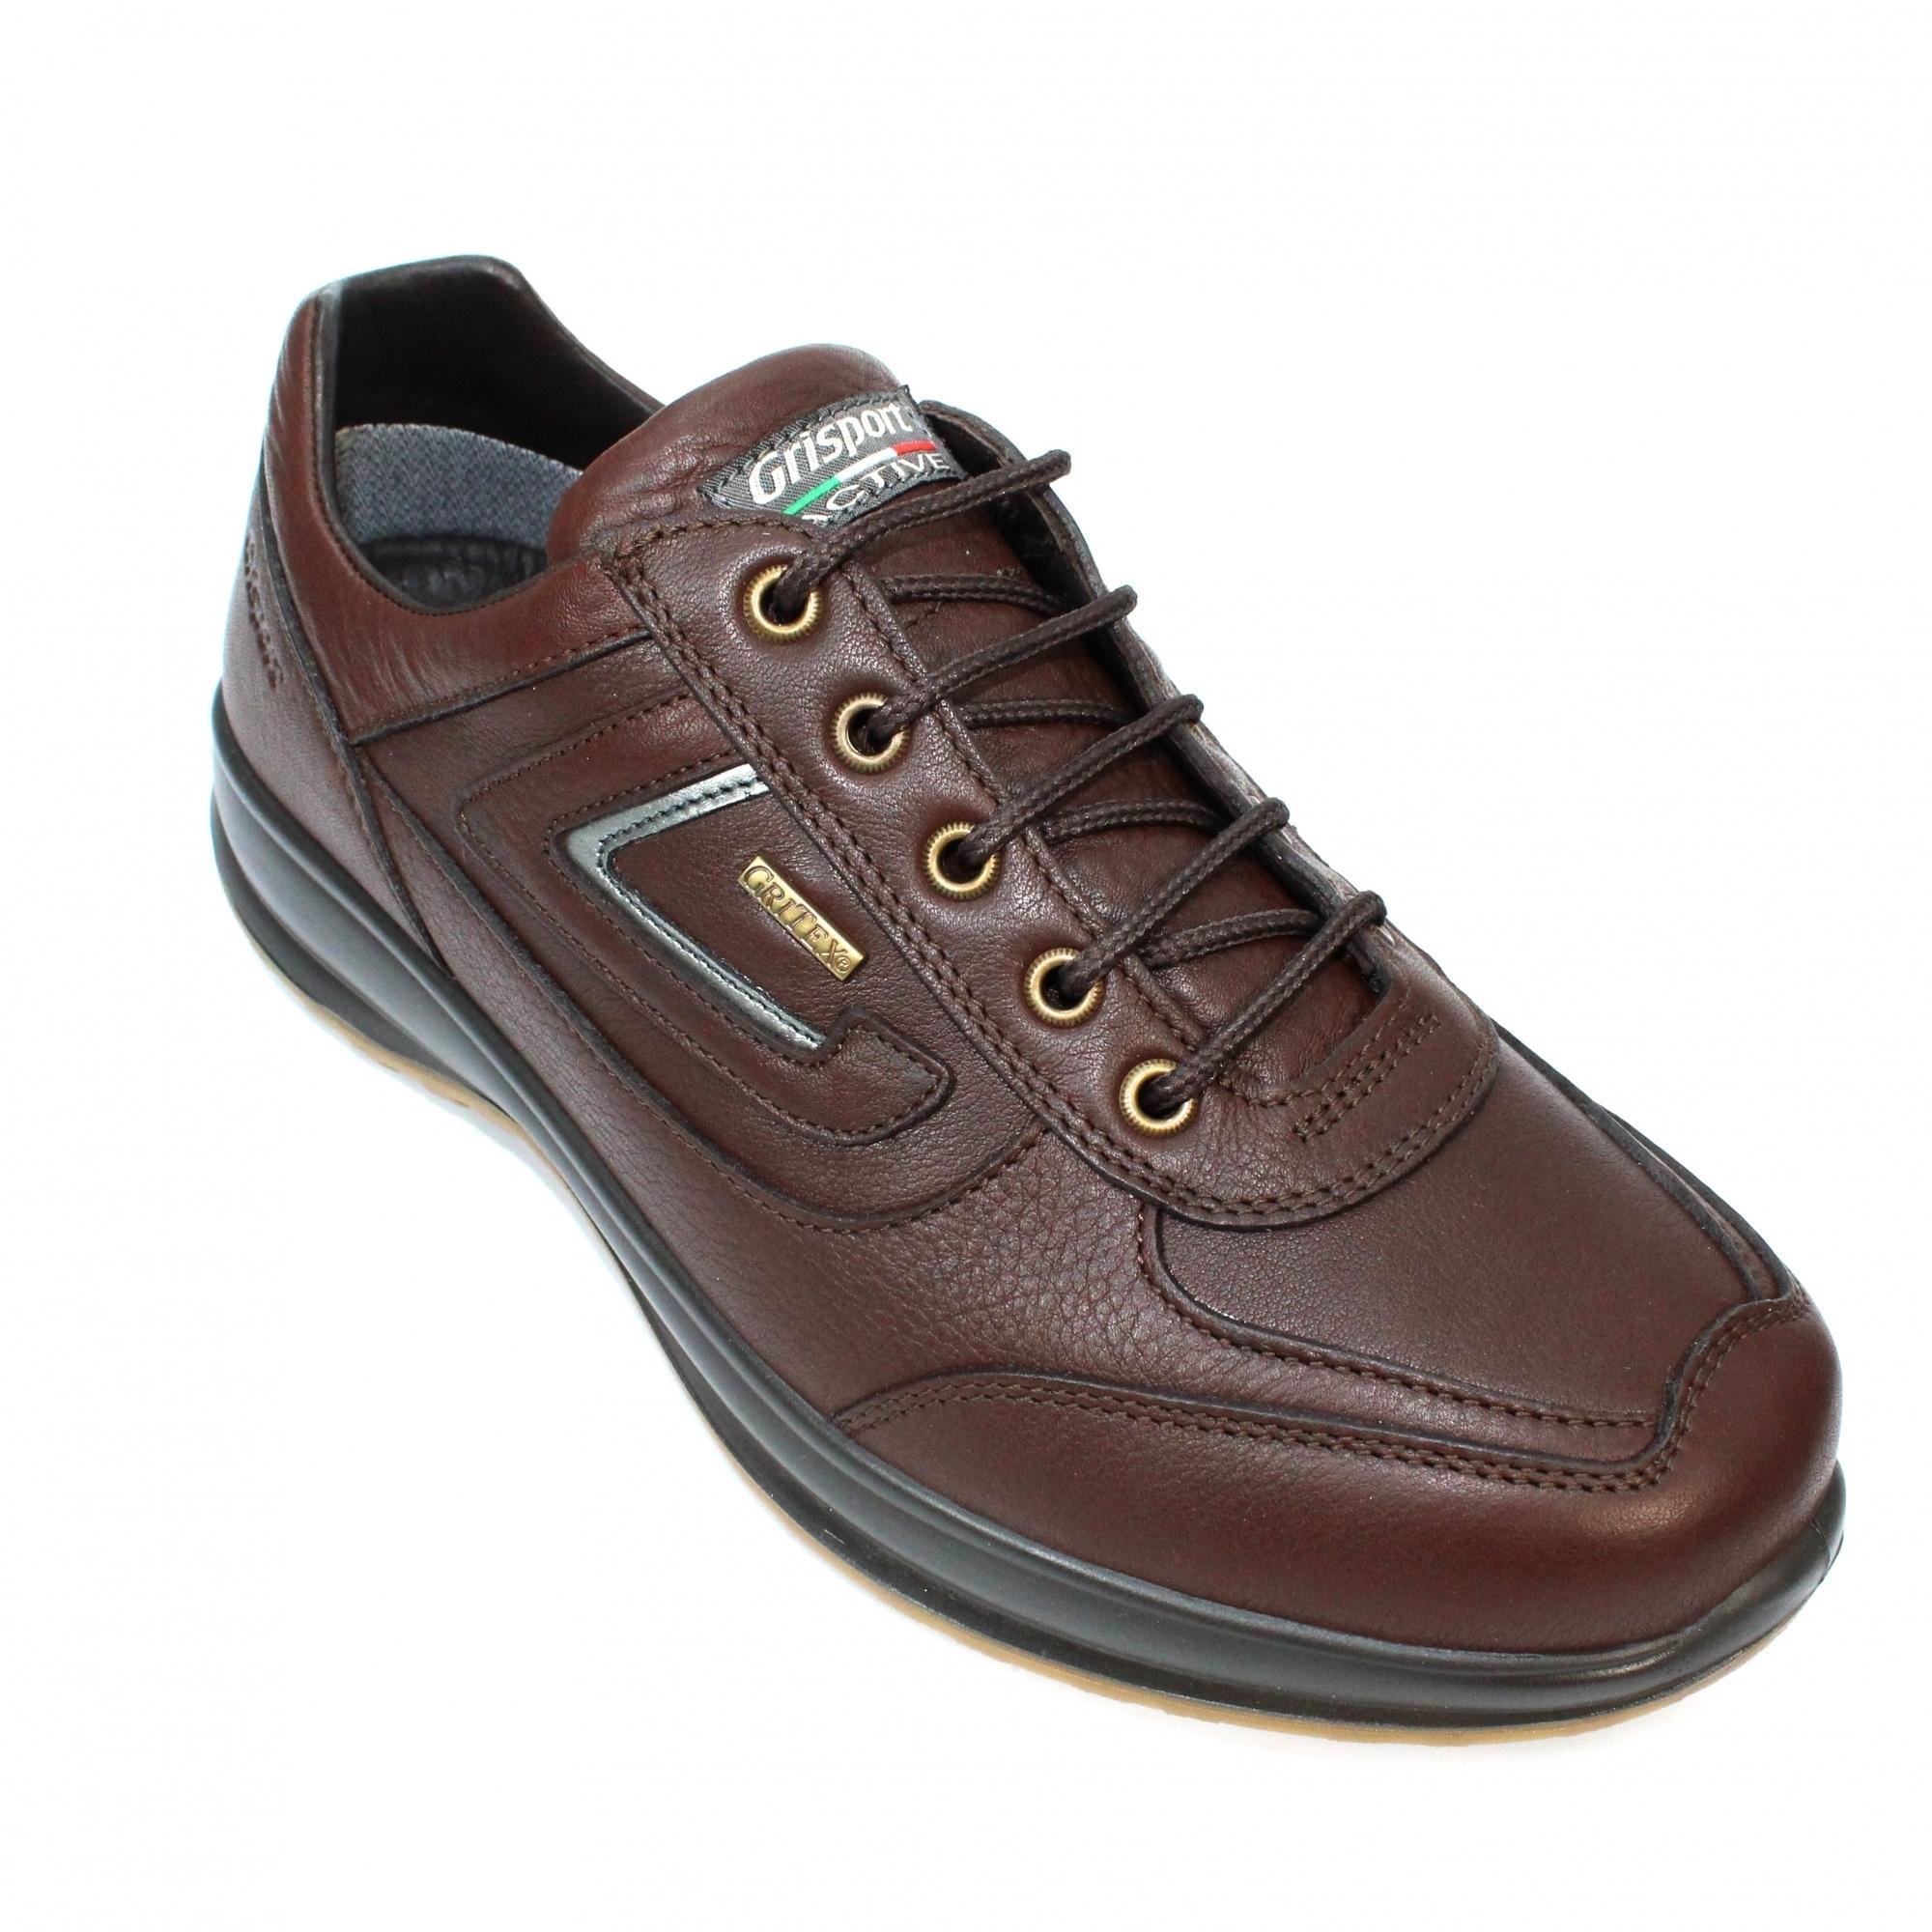 Grisport Mens Airwalker Leather Walking Shoes (Brown) (12 UK)